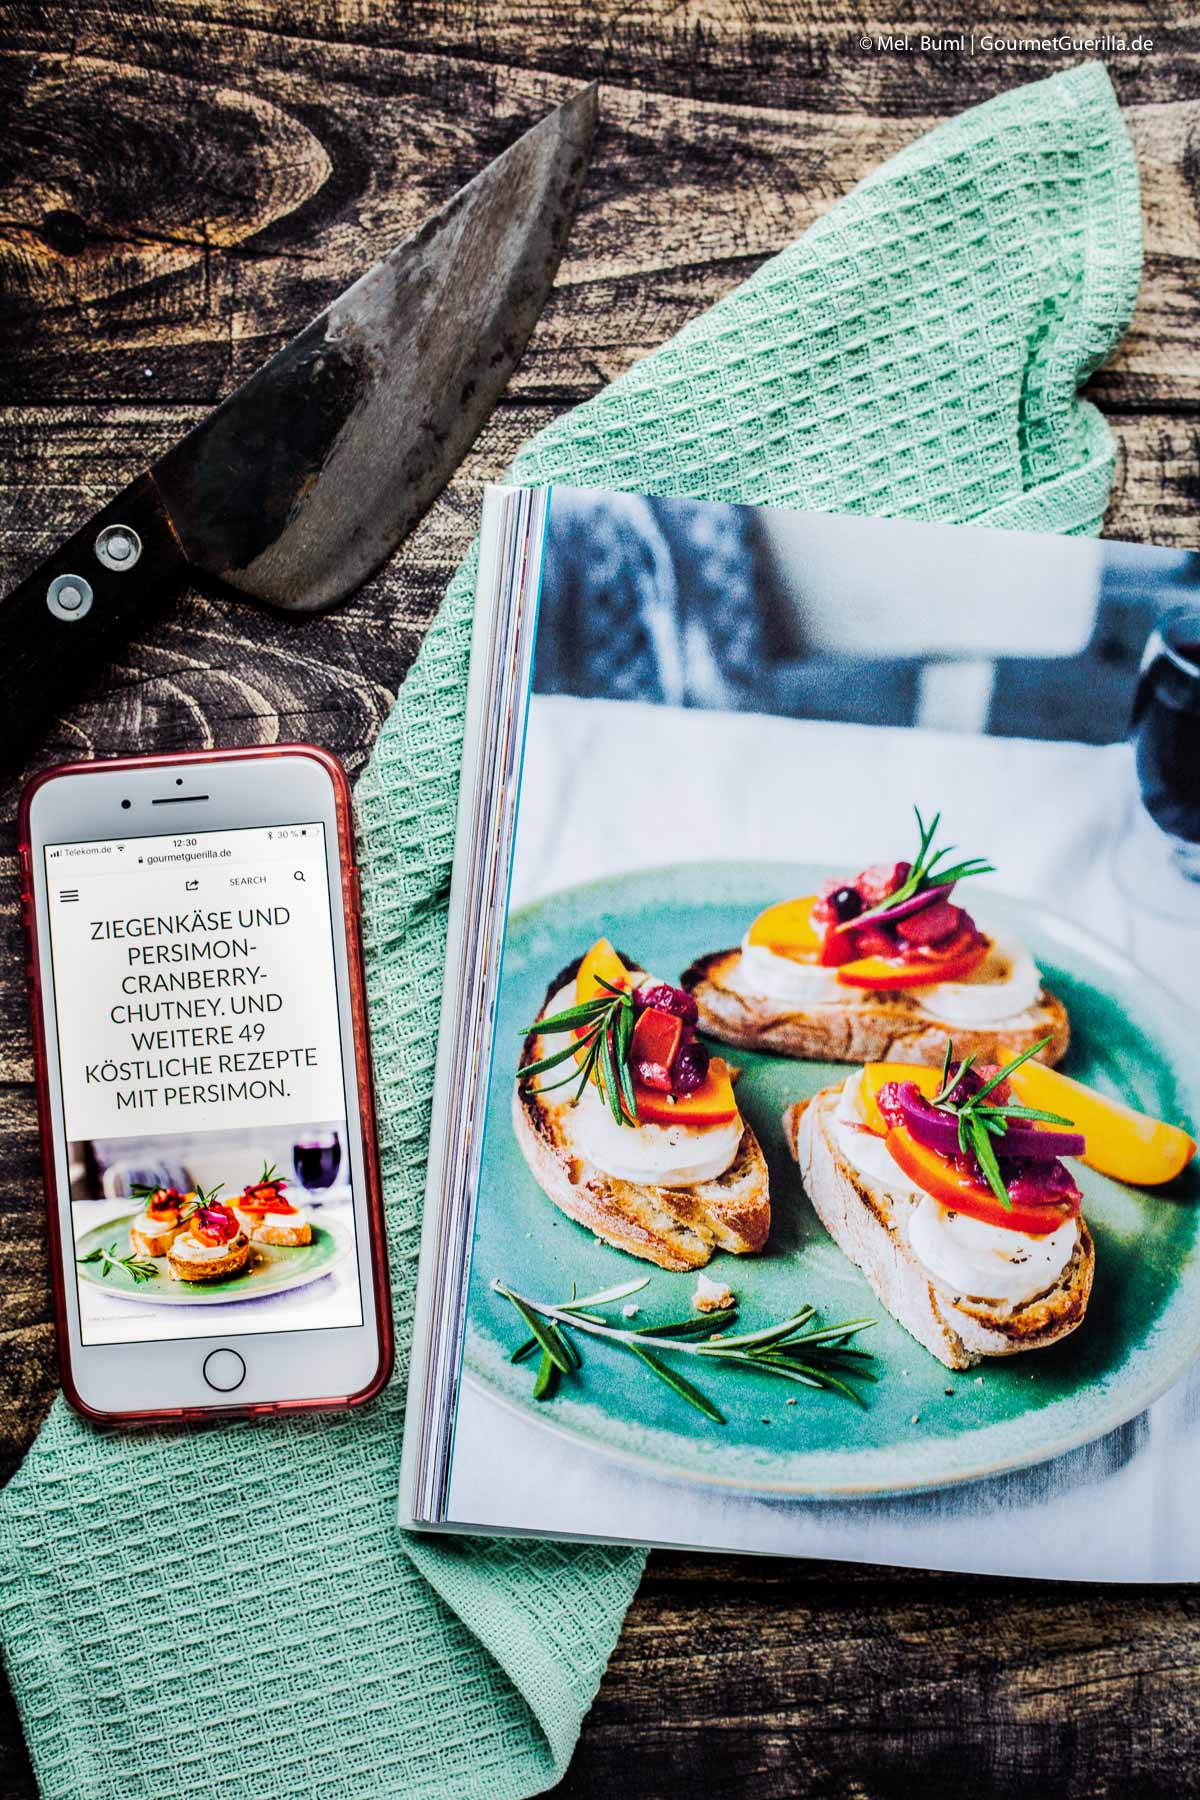 Wie wir kochen. Die besten Foodblogs und ihre leckersten Rezepte | GourmetGuerilla.de